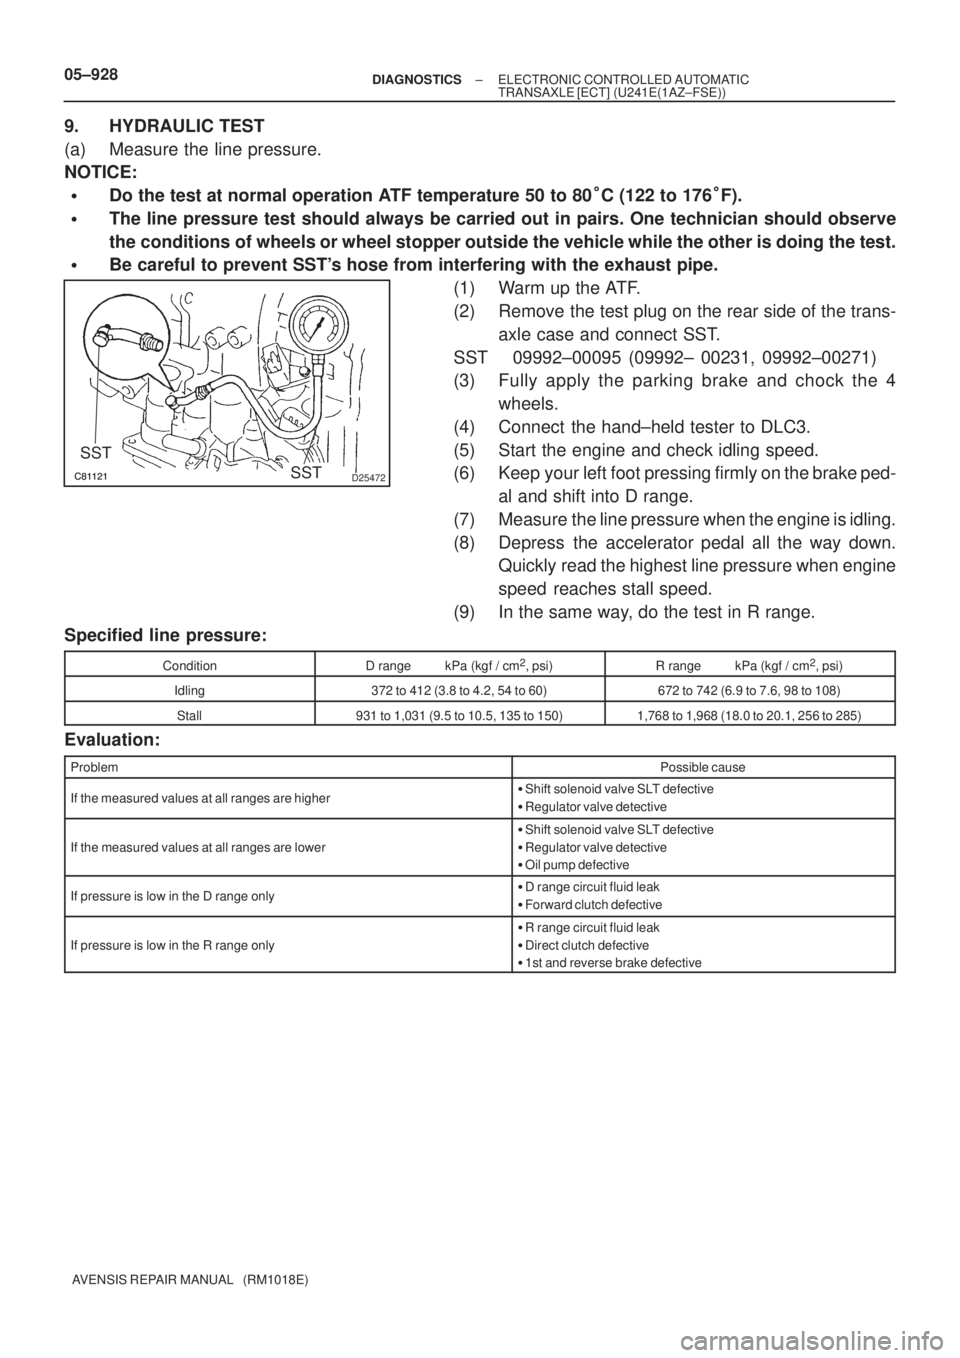 TOYOTA AVENSIS 2005  Service Repair Manual D25472
SST
SST
05±928± DIAGNOSTICSELECTRONIC CONTROLLED AUTOMATIC
TRANSAXLE [ECT] (U241E(1AZ±FSE))
AVENSIS REPAIR MANUAL   (RM1018E)
9. HYDRAULIC TEST
(a) Measure the line pressure.
NOT